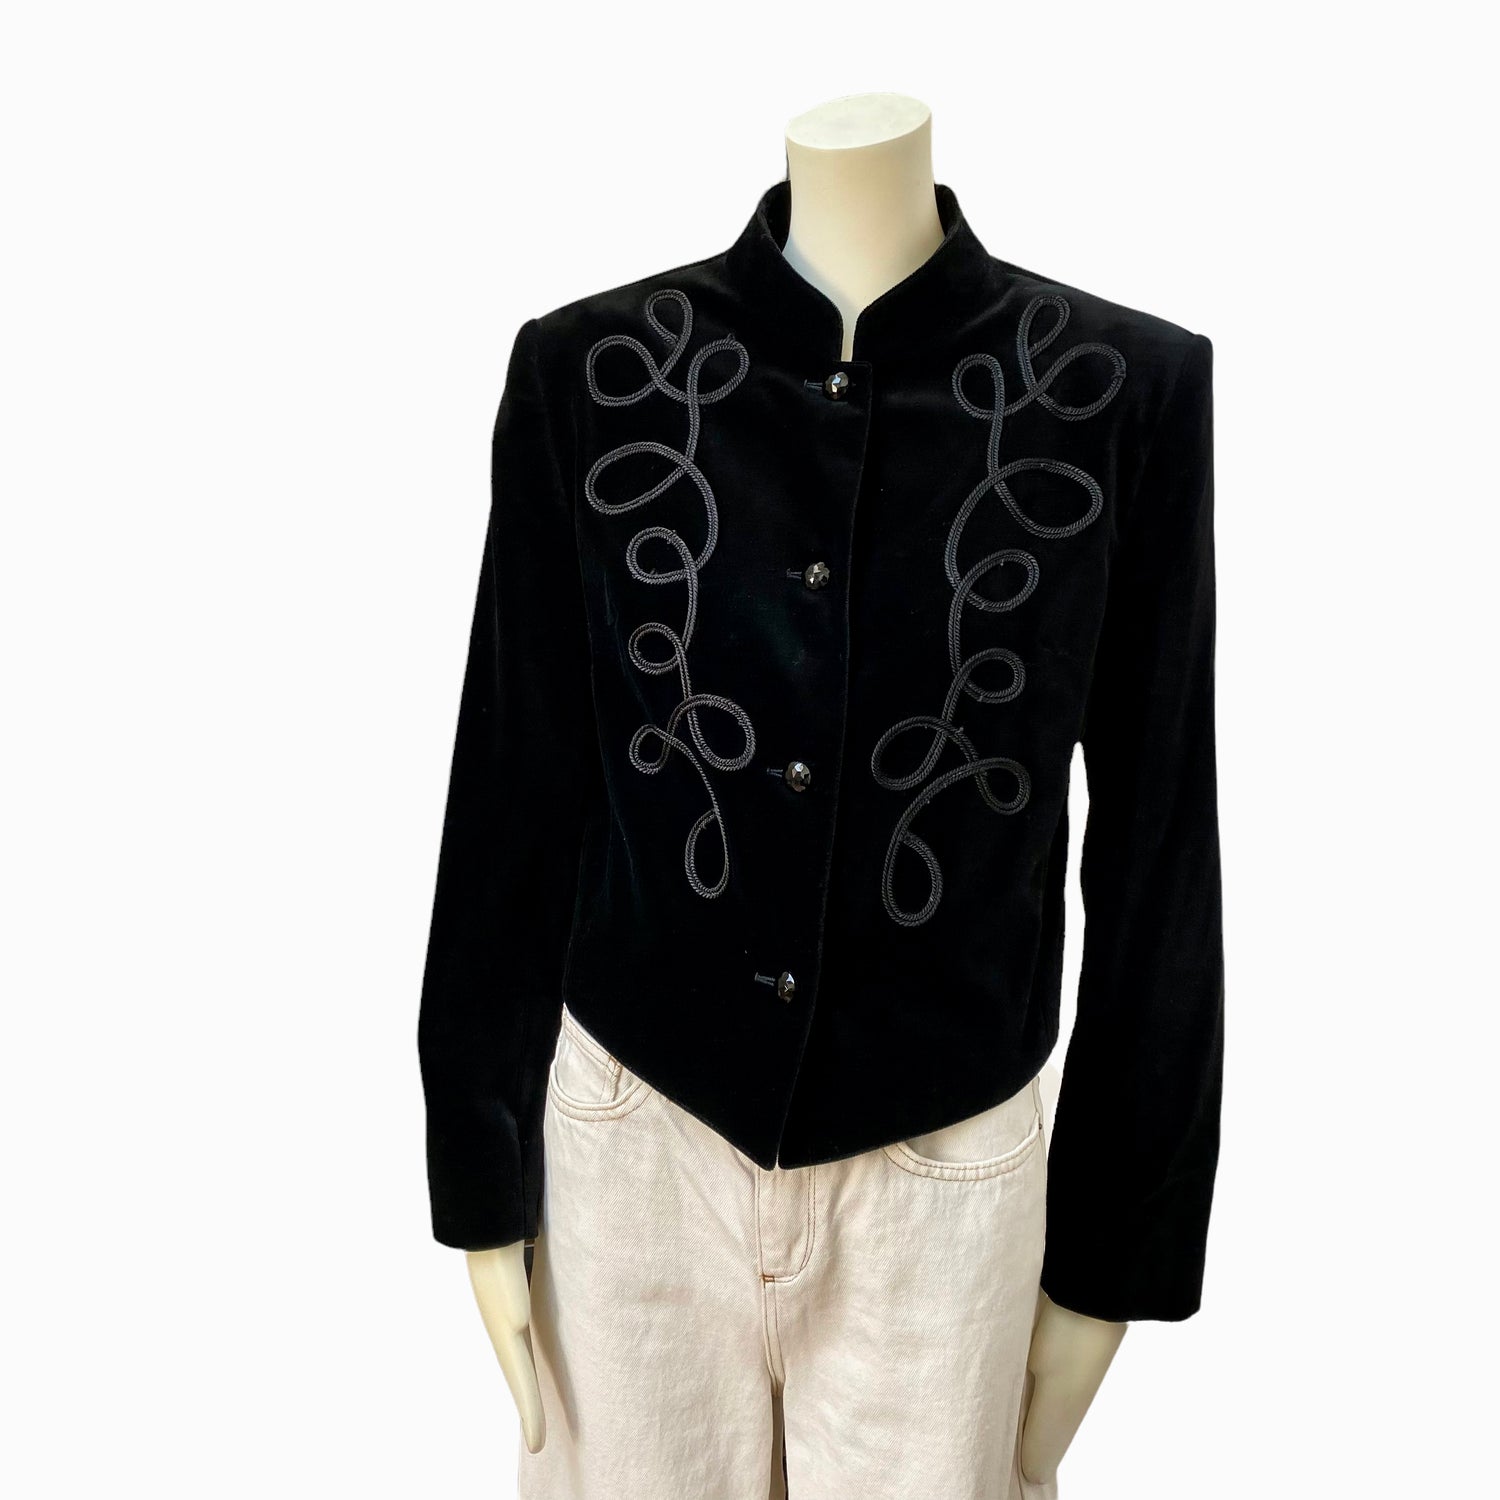 Guy Laroche velvet black Spencer jacket - M - 1980s